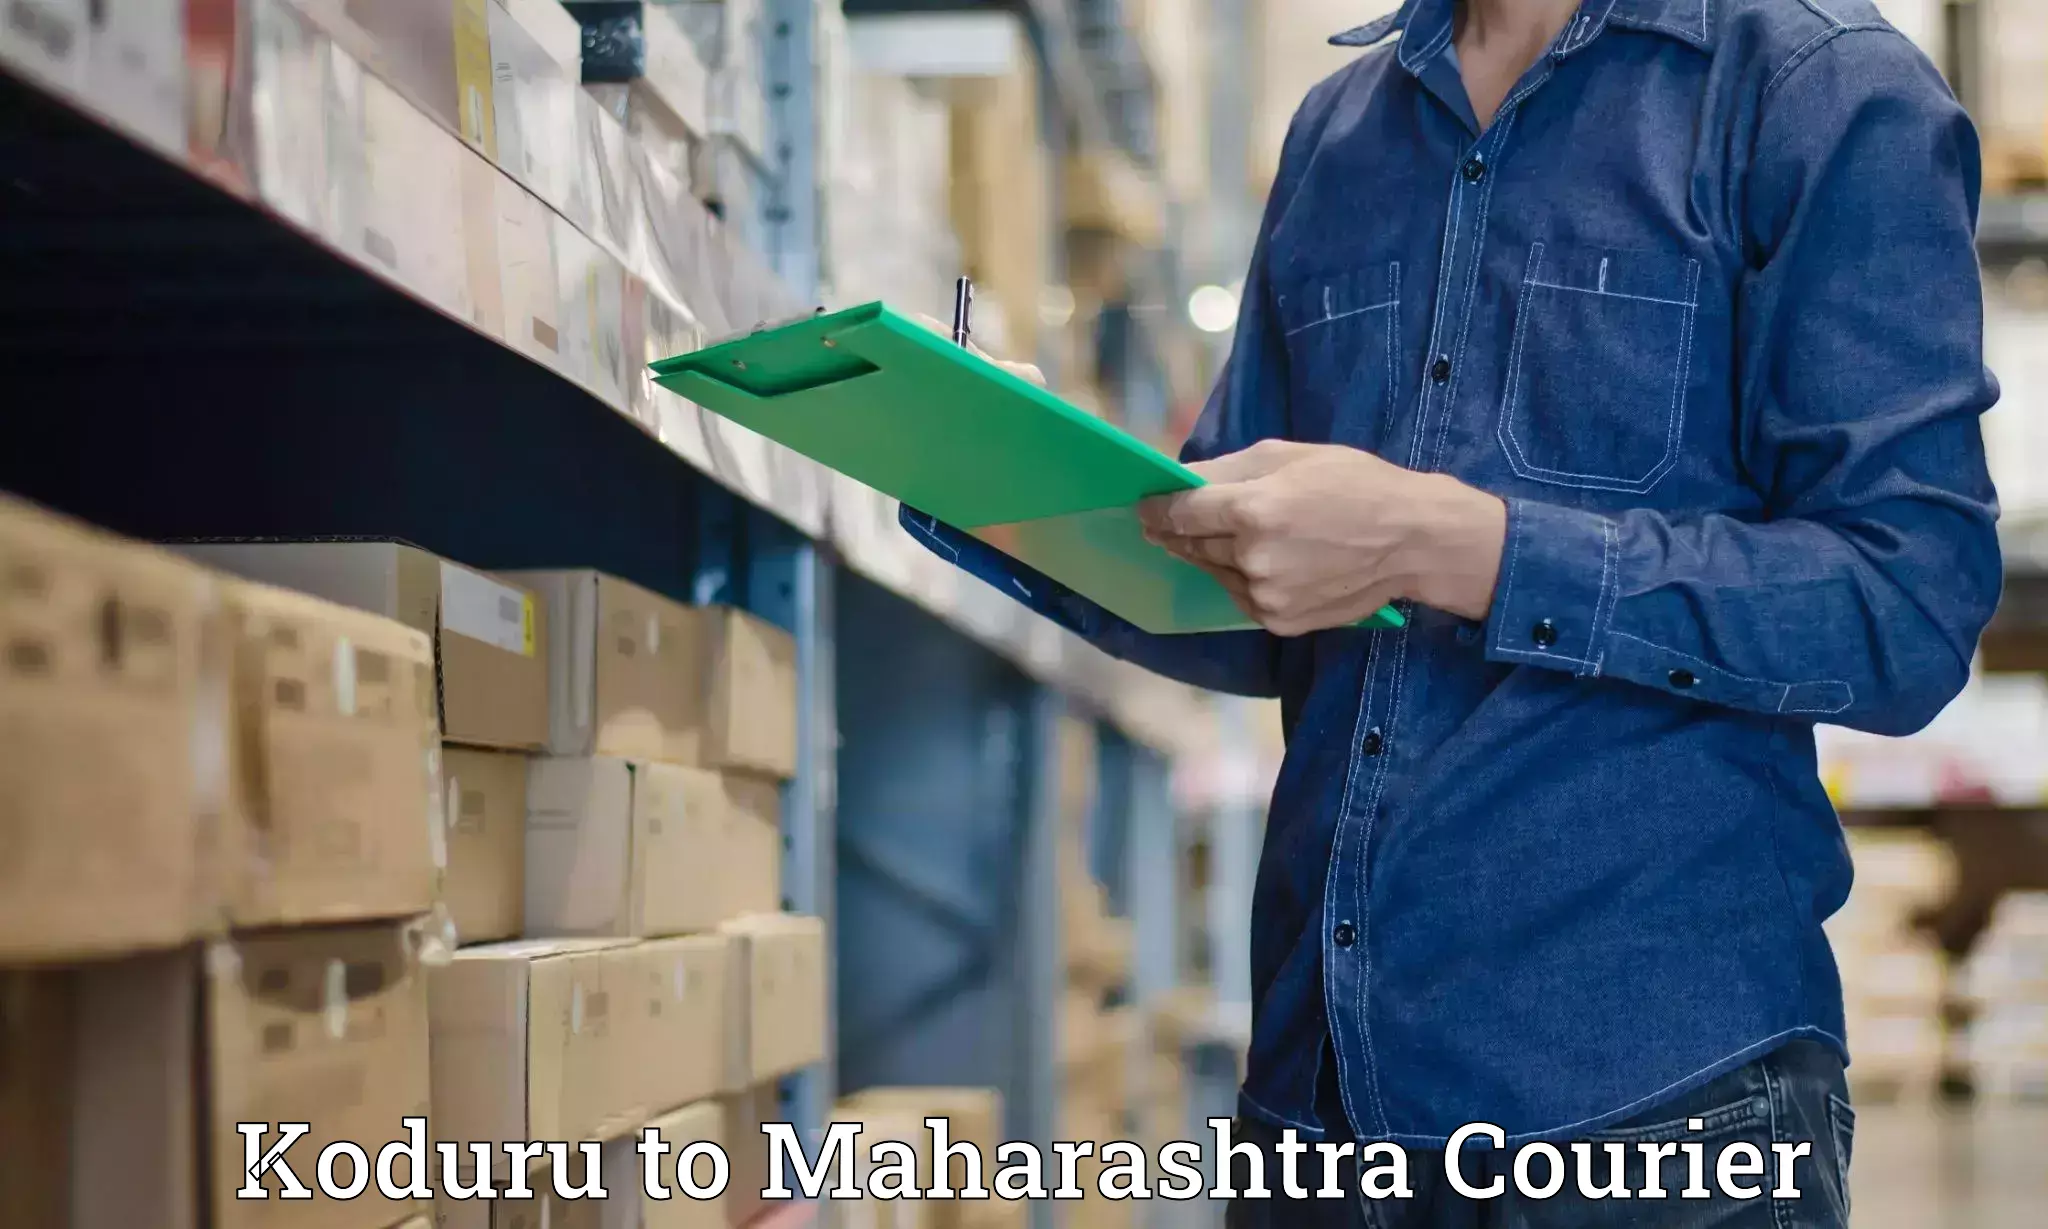 Courier insurance Koduru to Nandurbar